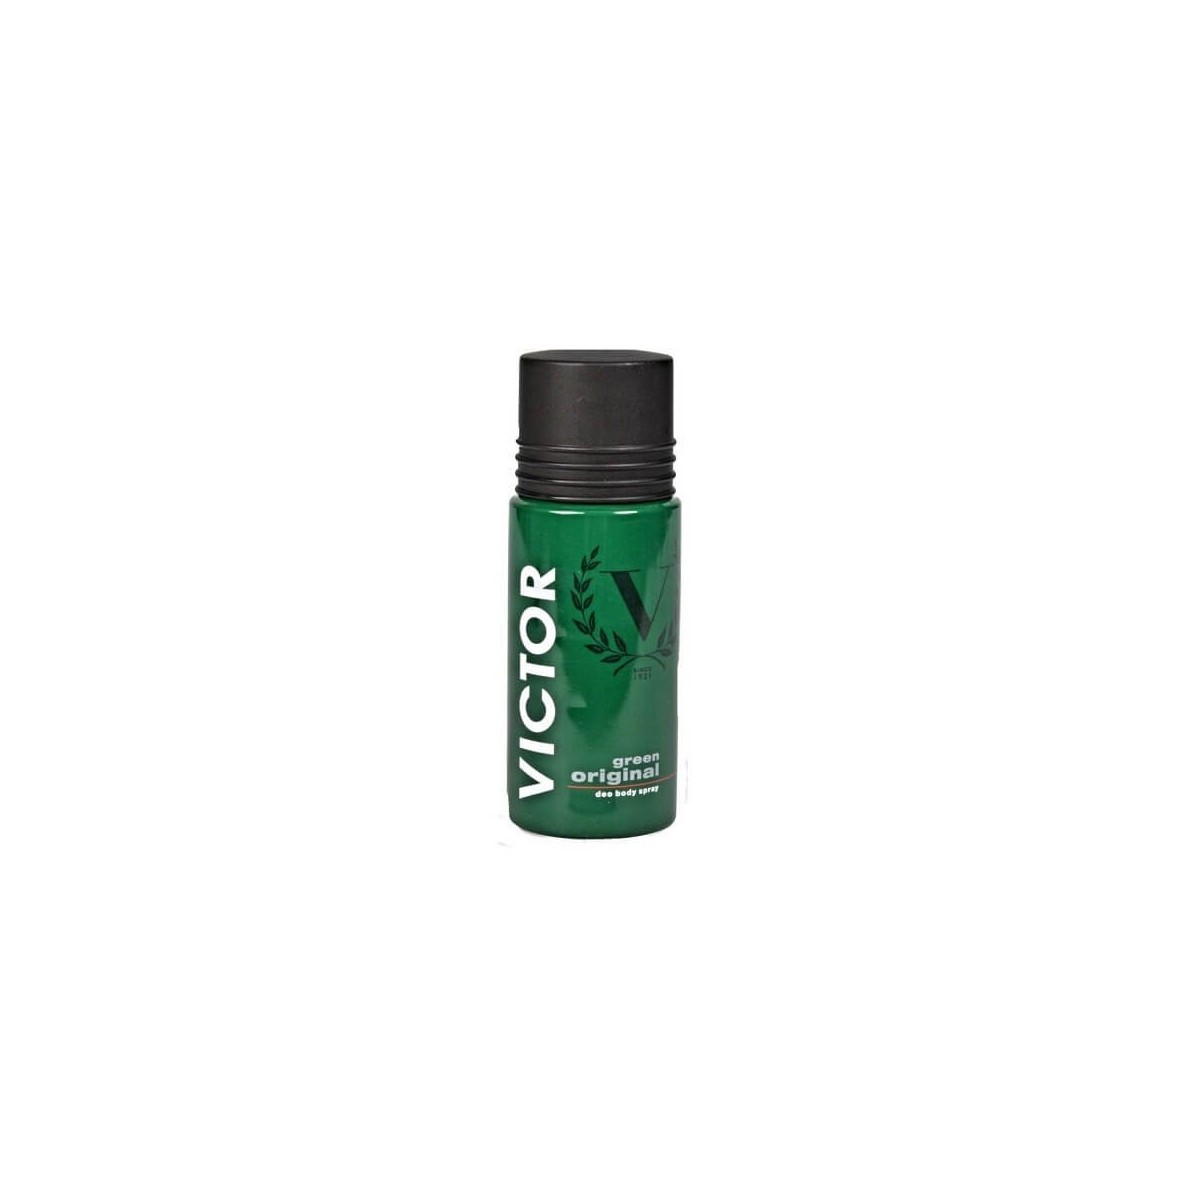 Victor Green Original Deodorante 150ml spray